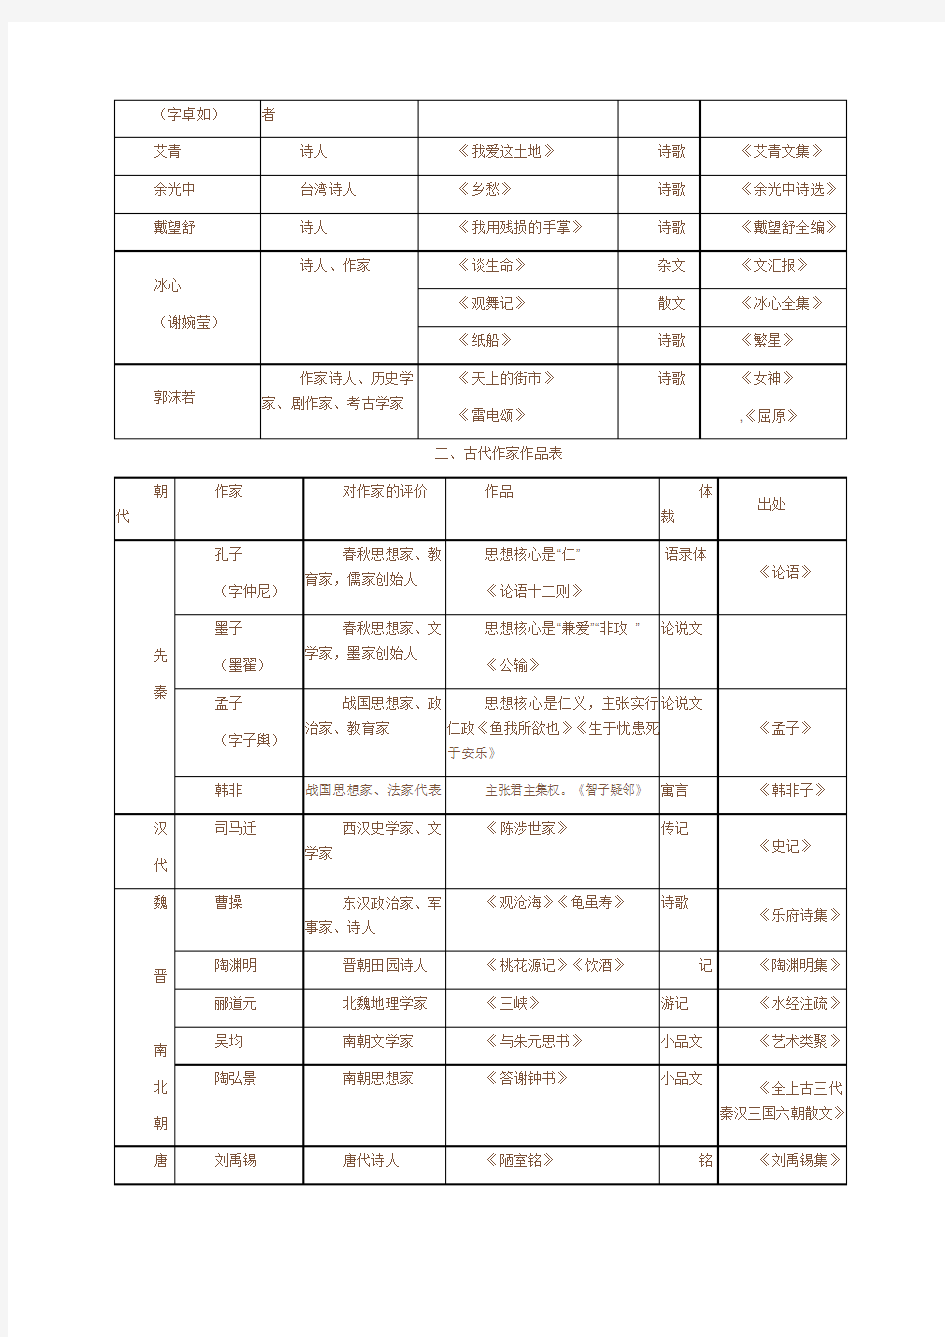 人教版初中语文文学常识一览表(最新整理)